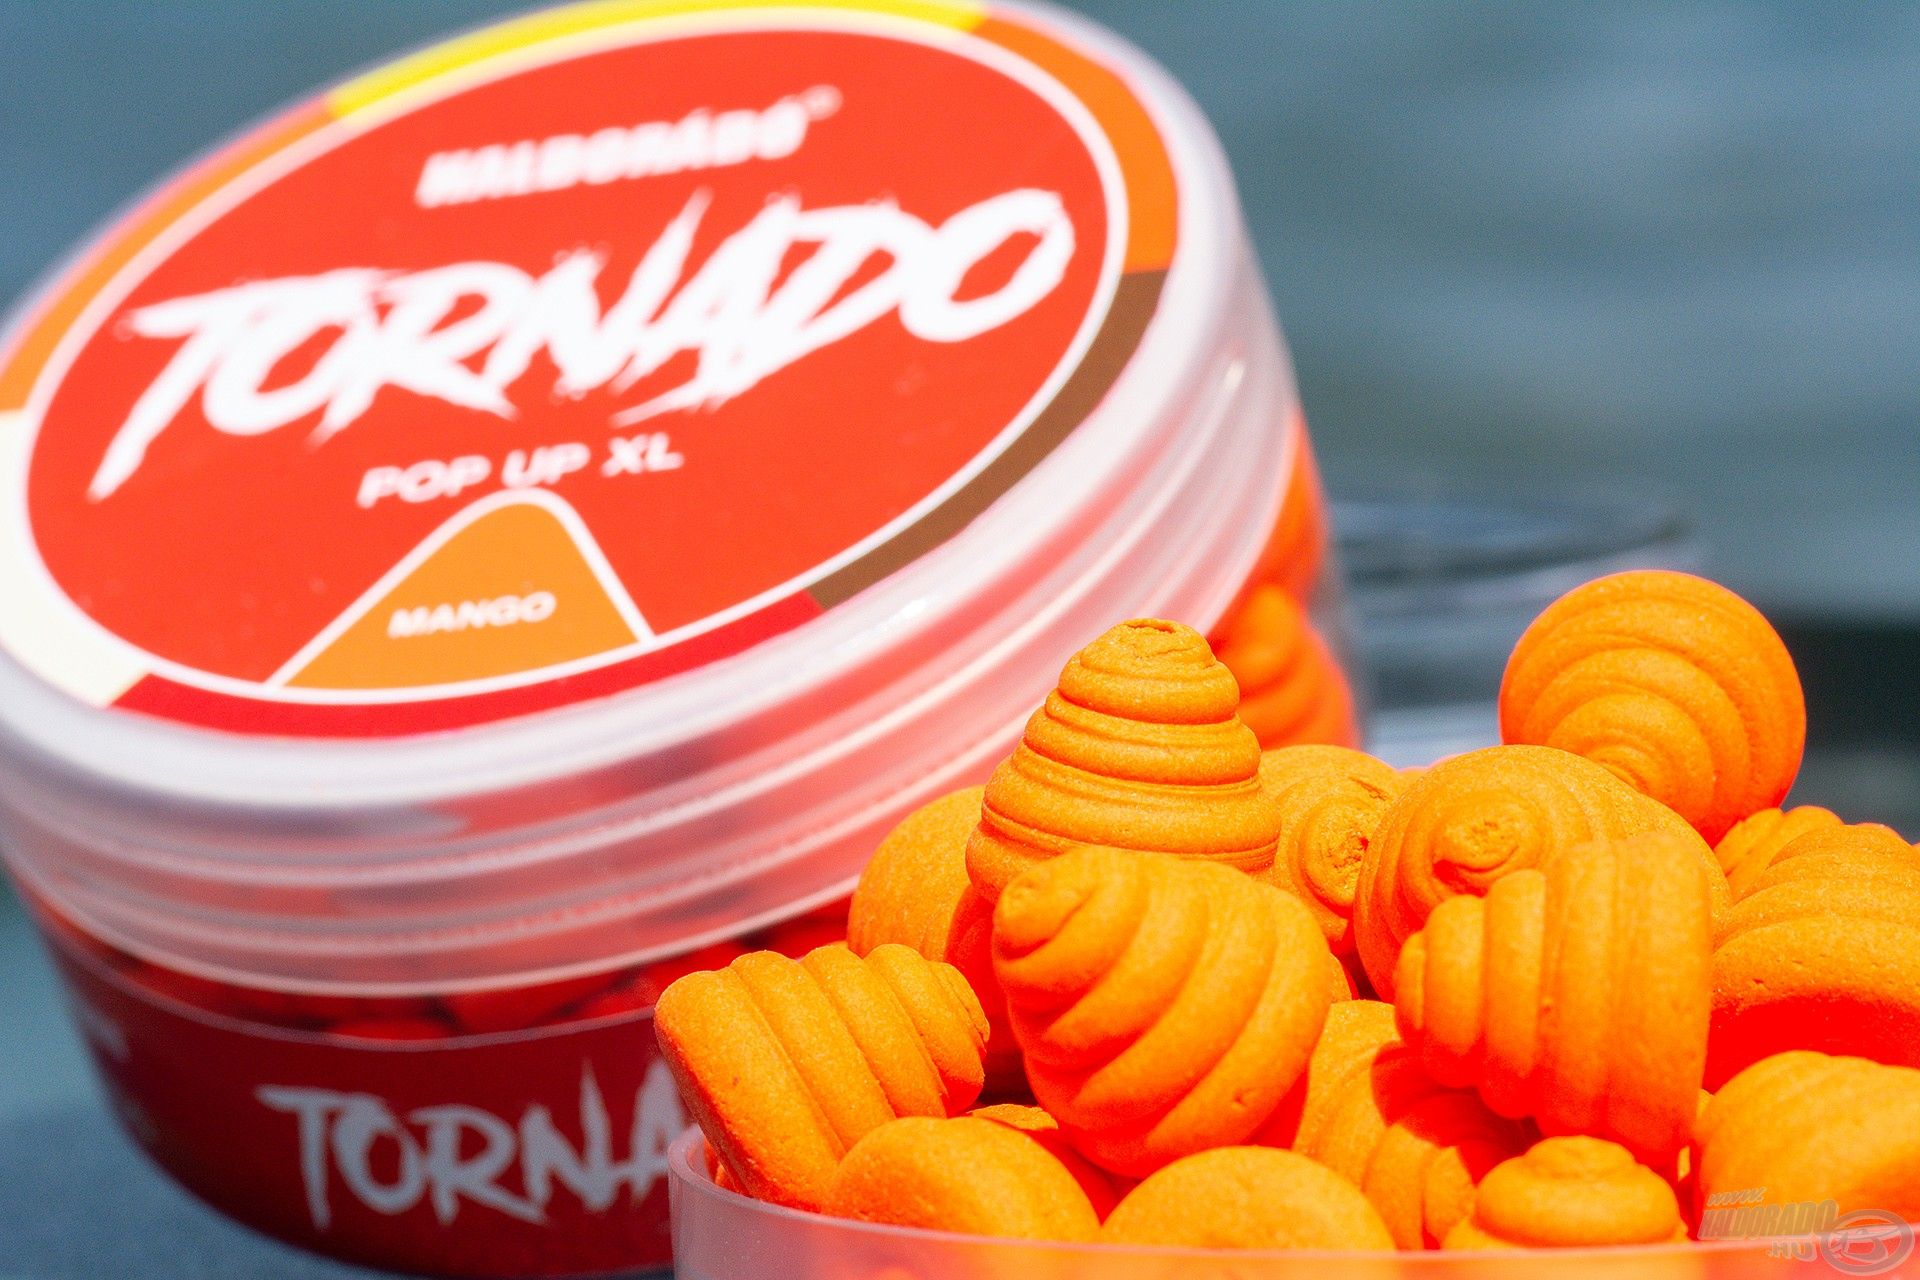 Büszkén mutatom be 2021-es fejlesztéseink közül a TORNADO Pop Up XL Mangót!